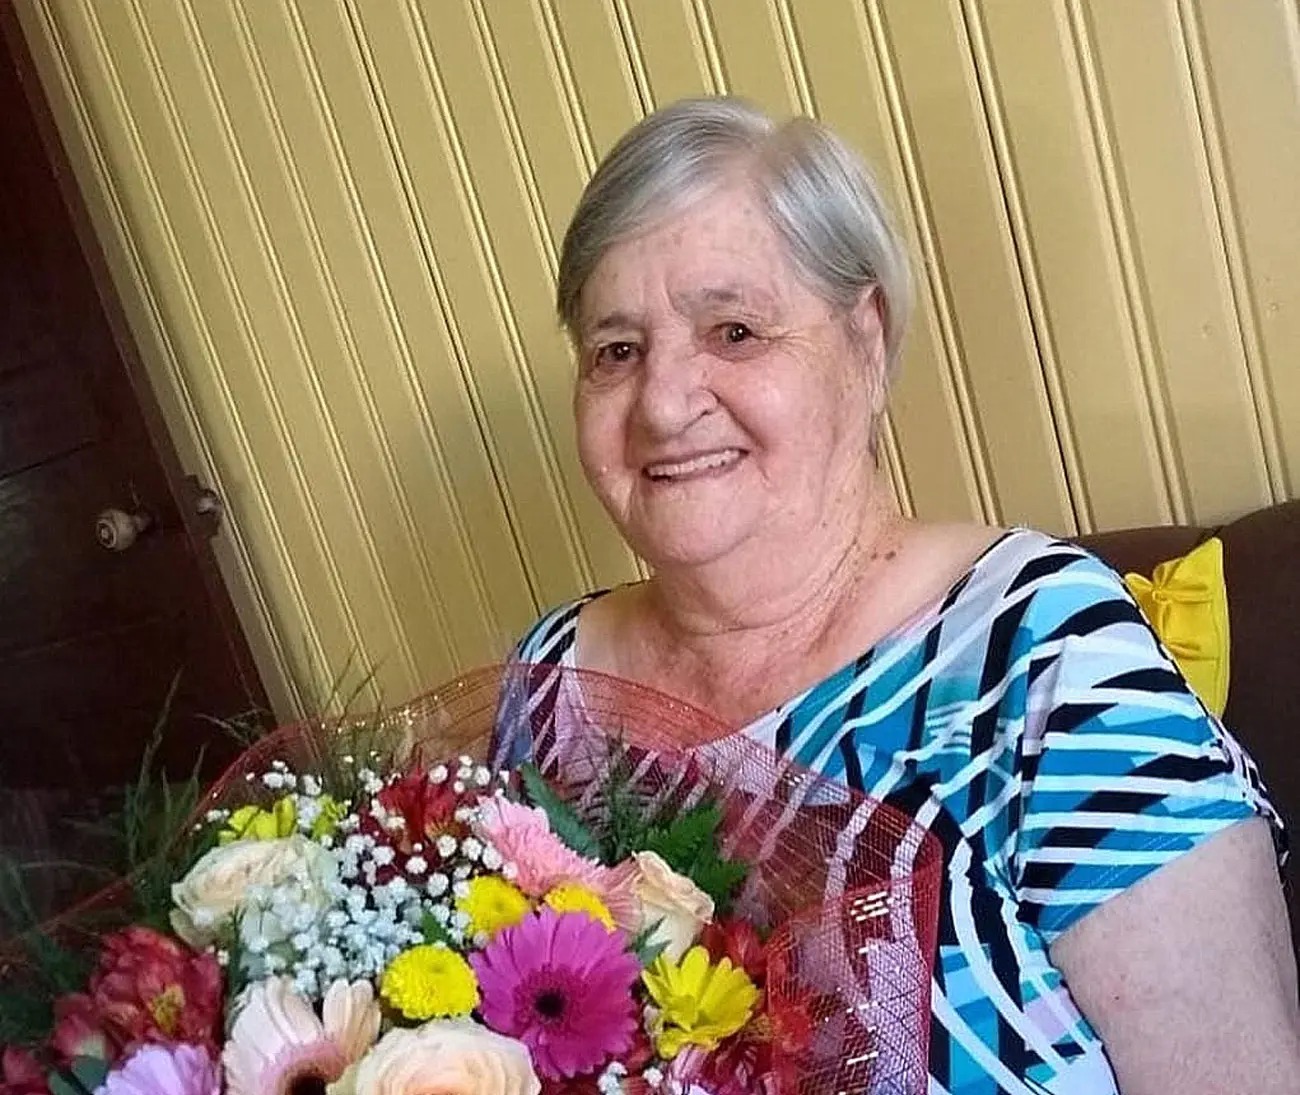 Maria Ronchi Ghislandi com um buquê de flores nas mãos